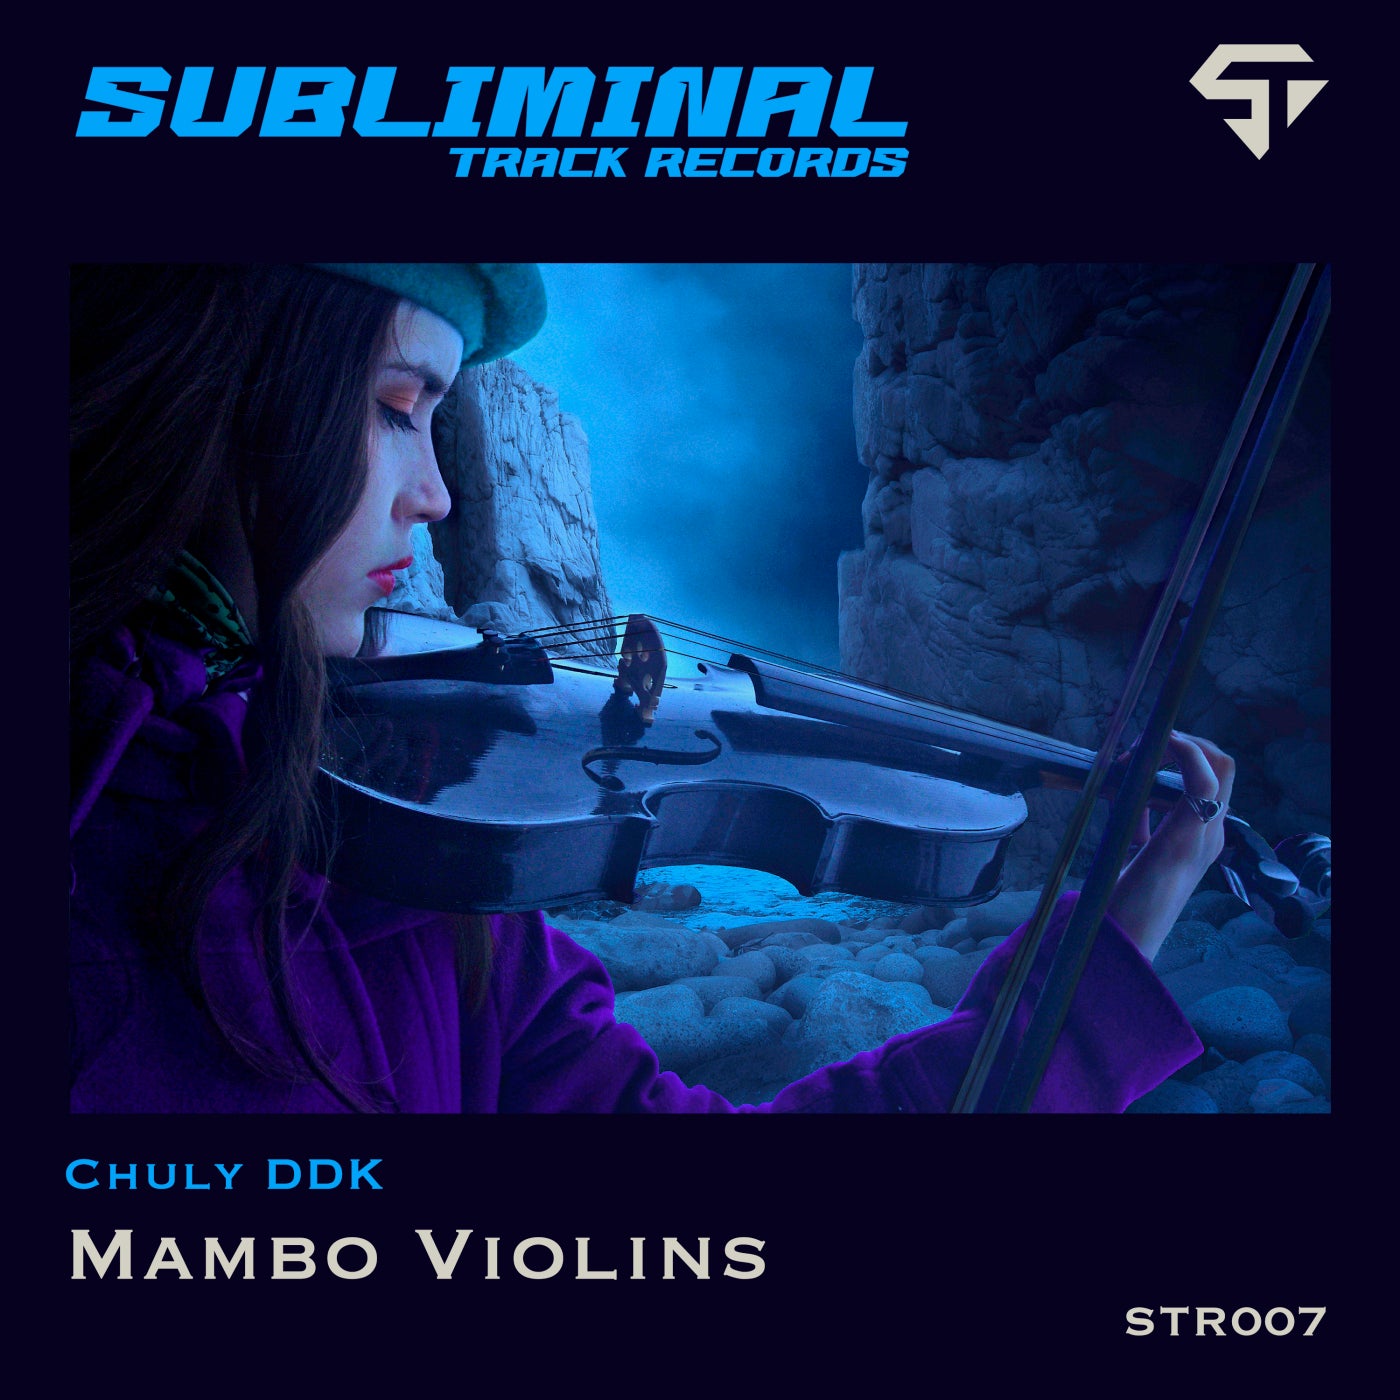 Mambo Violins